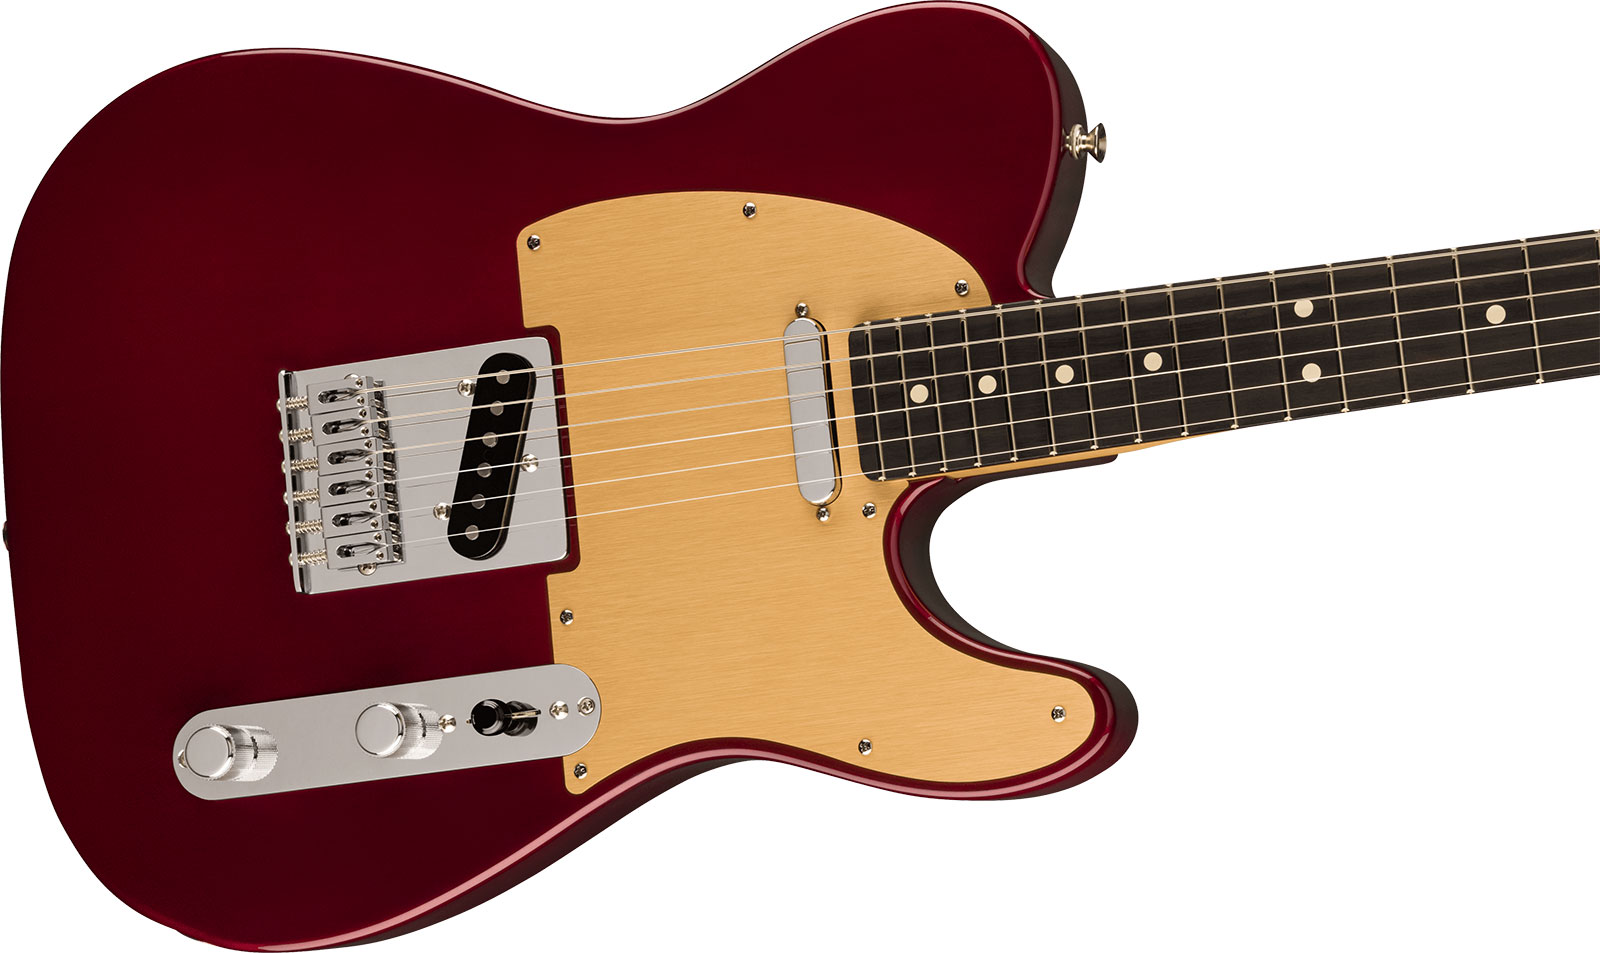 Fender Tele Player Ltd Mex 2s Pure Vintage Ht Eb - Oxblood - Guitarra eléctrica con forma de tel - Variation 2